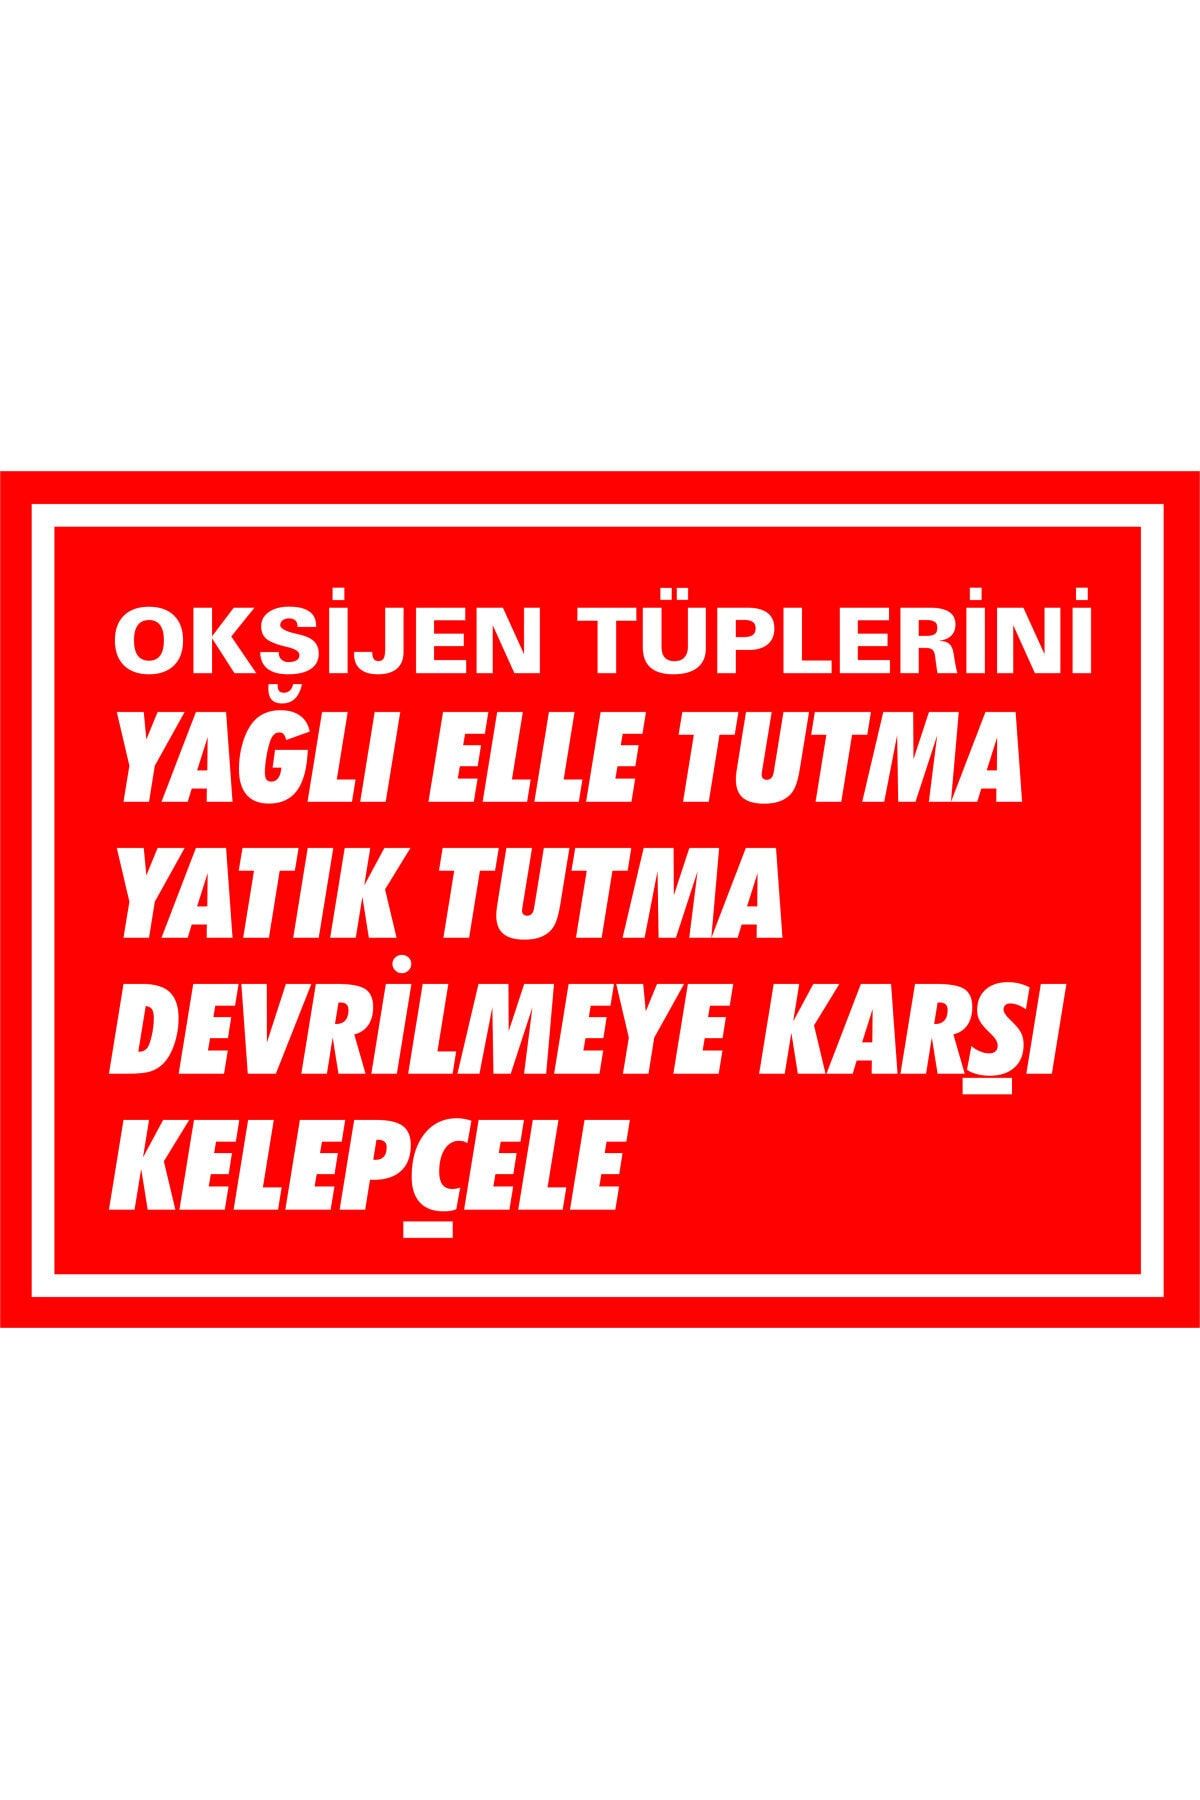 İzmir Serigrafi Oksijen Tüplerini Yağlı Elle Tutma Devrilmeye Karşı Kelepçele 1 mm Galvaniz 35 X 50 cm